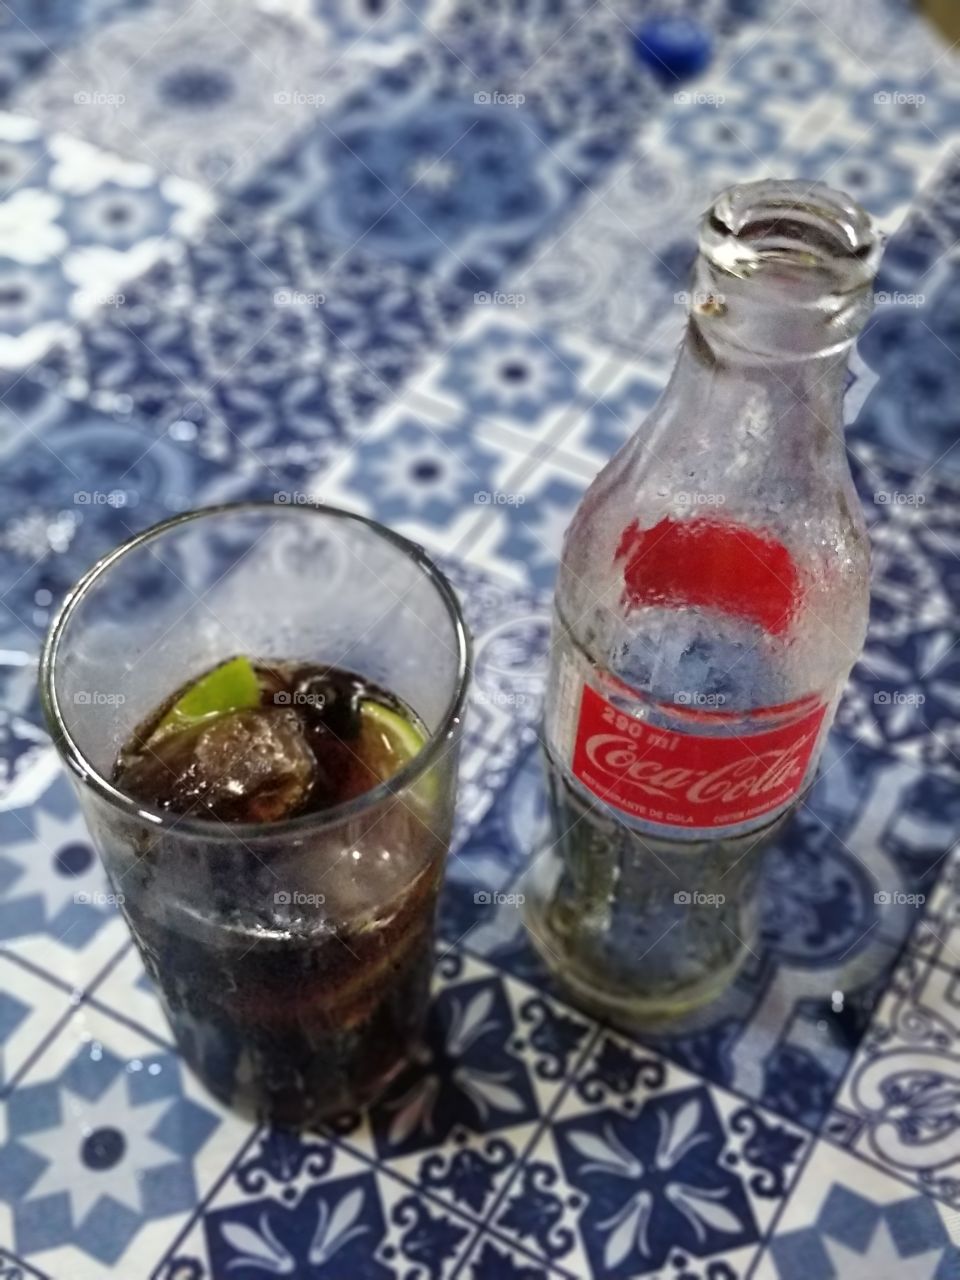 Coca Cola, drink